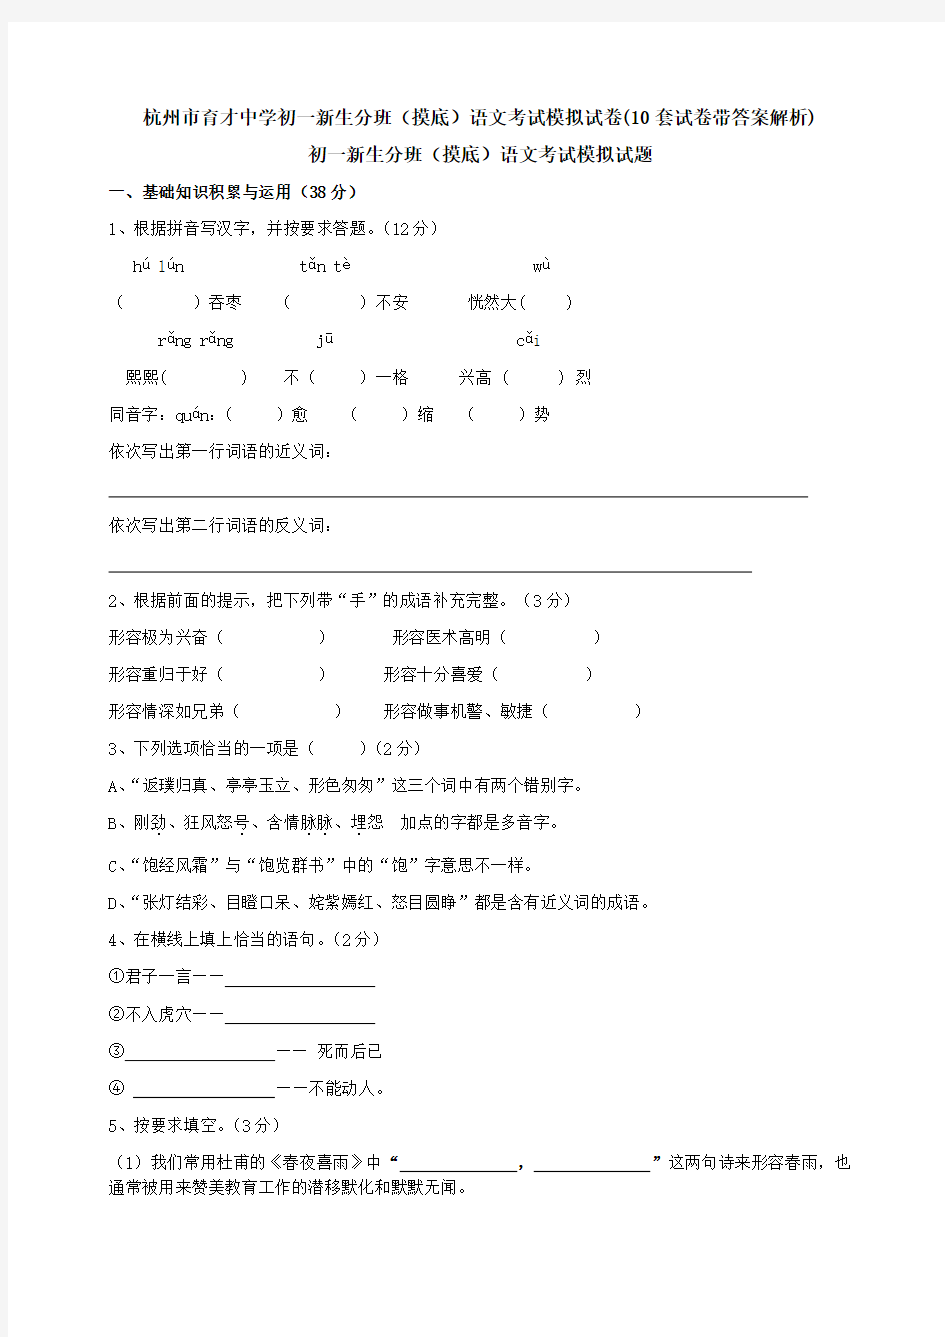 杭州市育才中学初一新生分班(摸底)语文考试模拟试卷(10套试卷带答案解析)